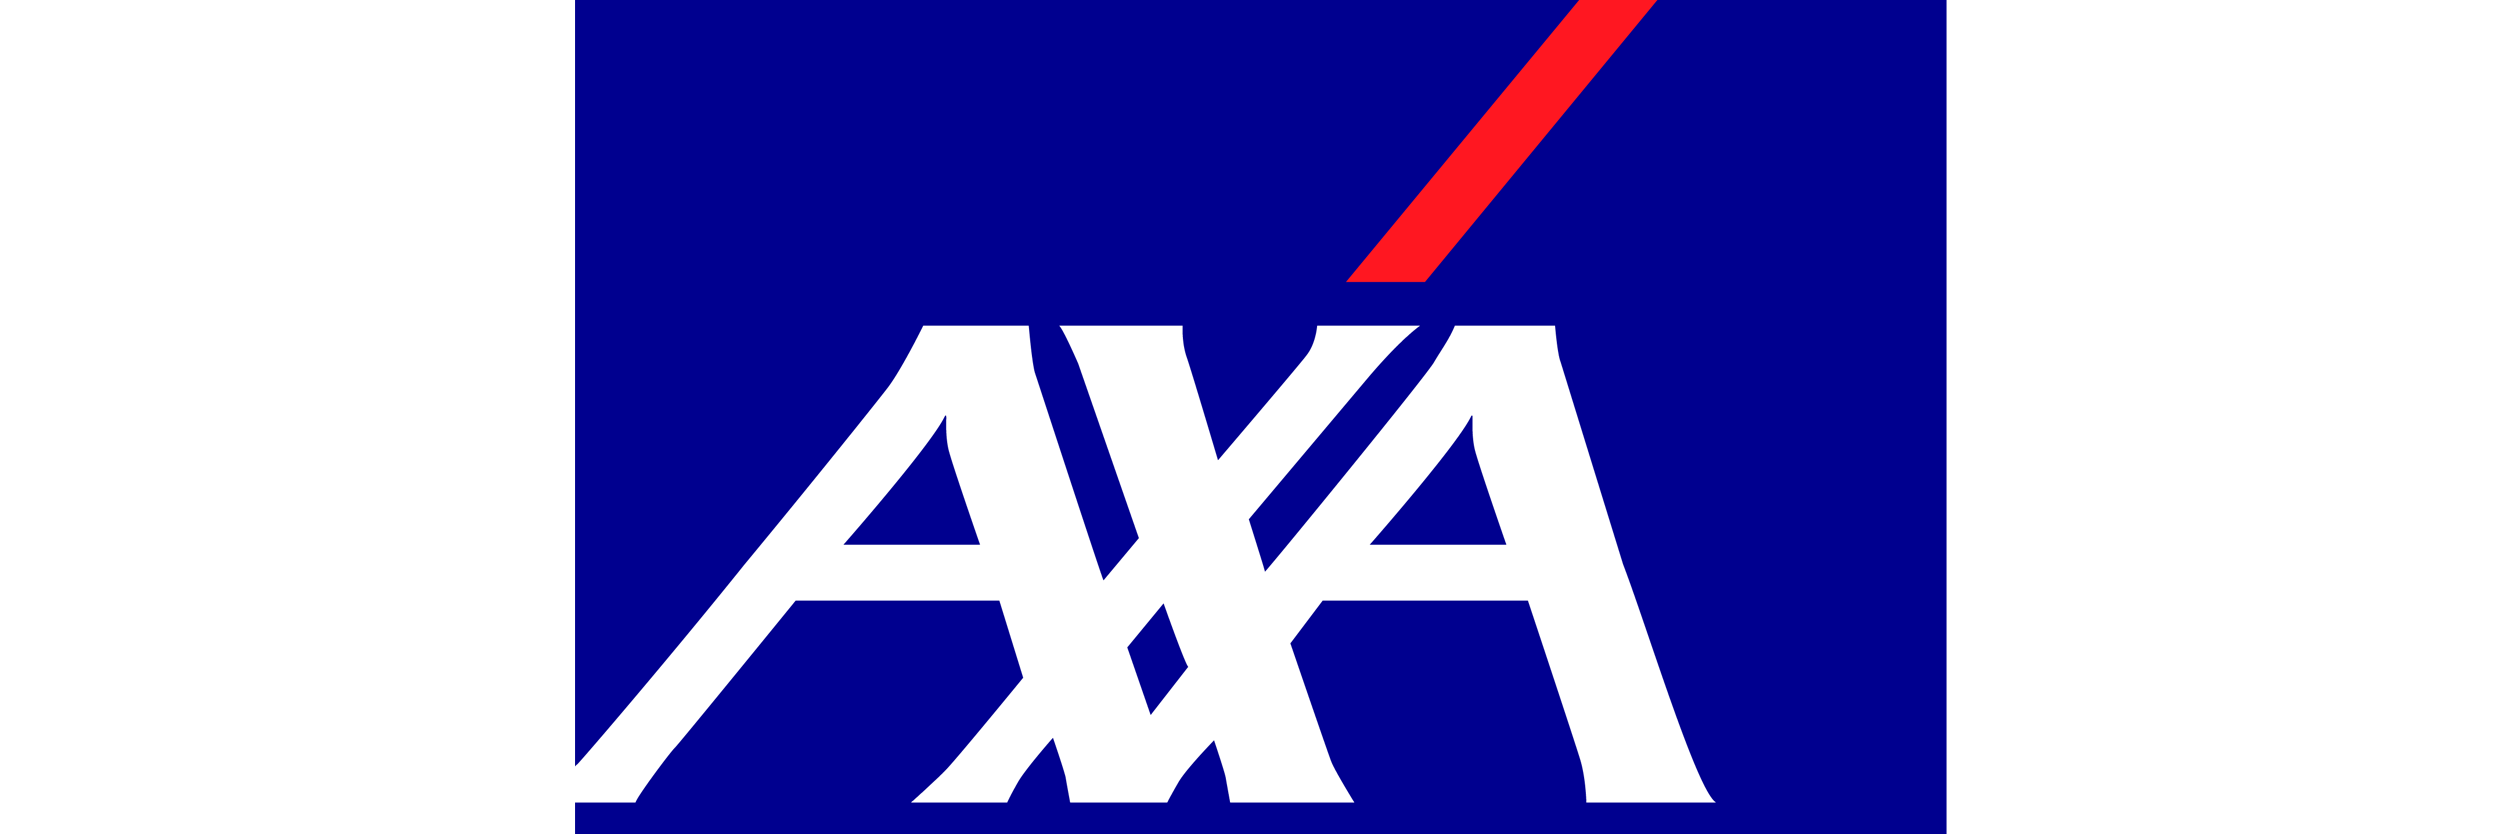 axa-new